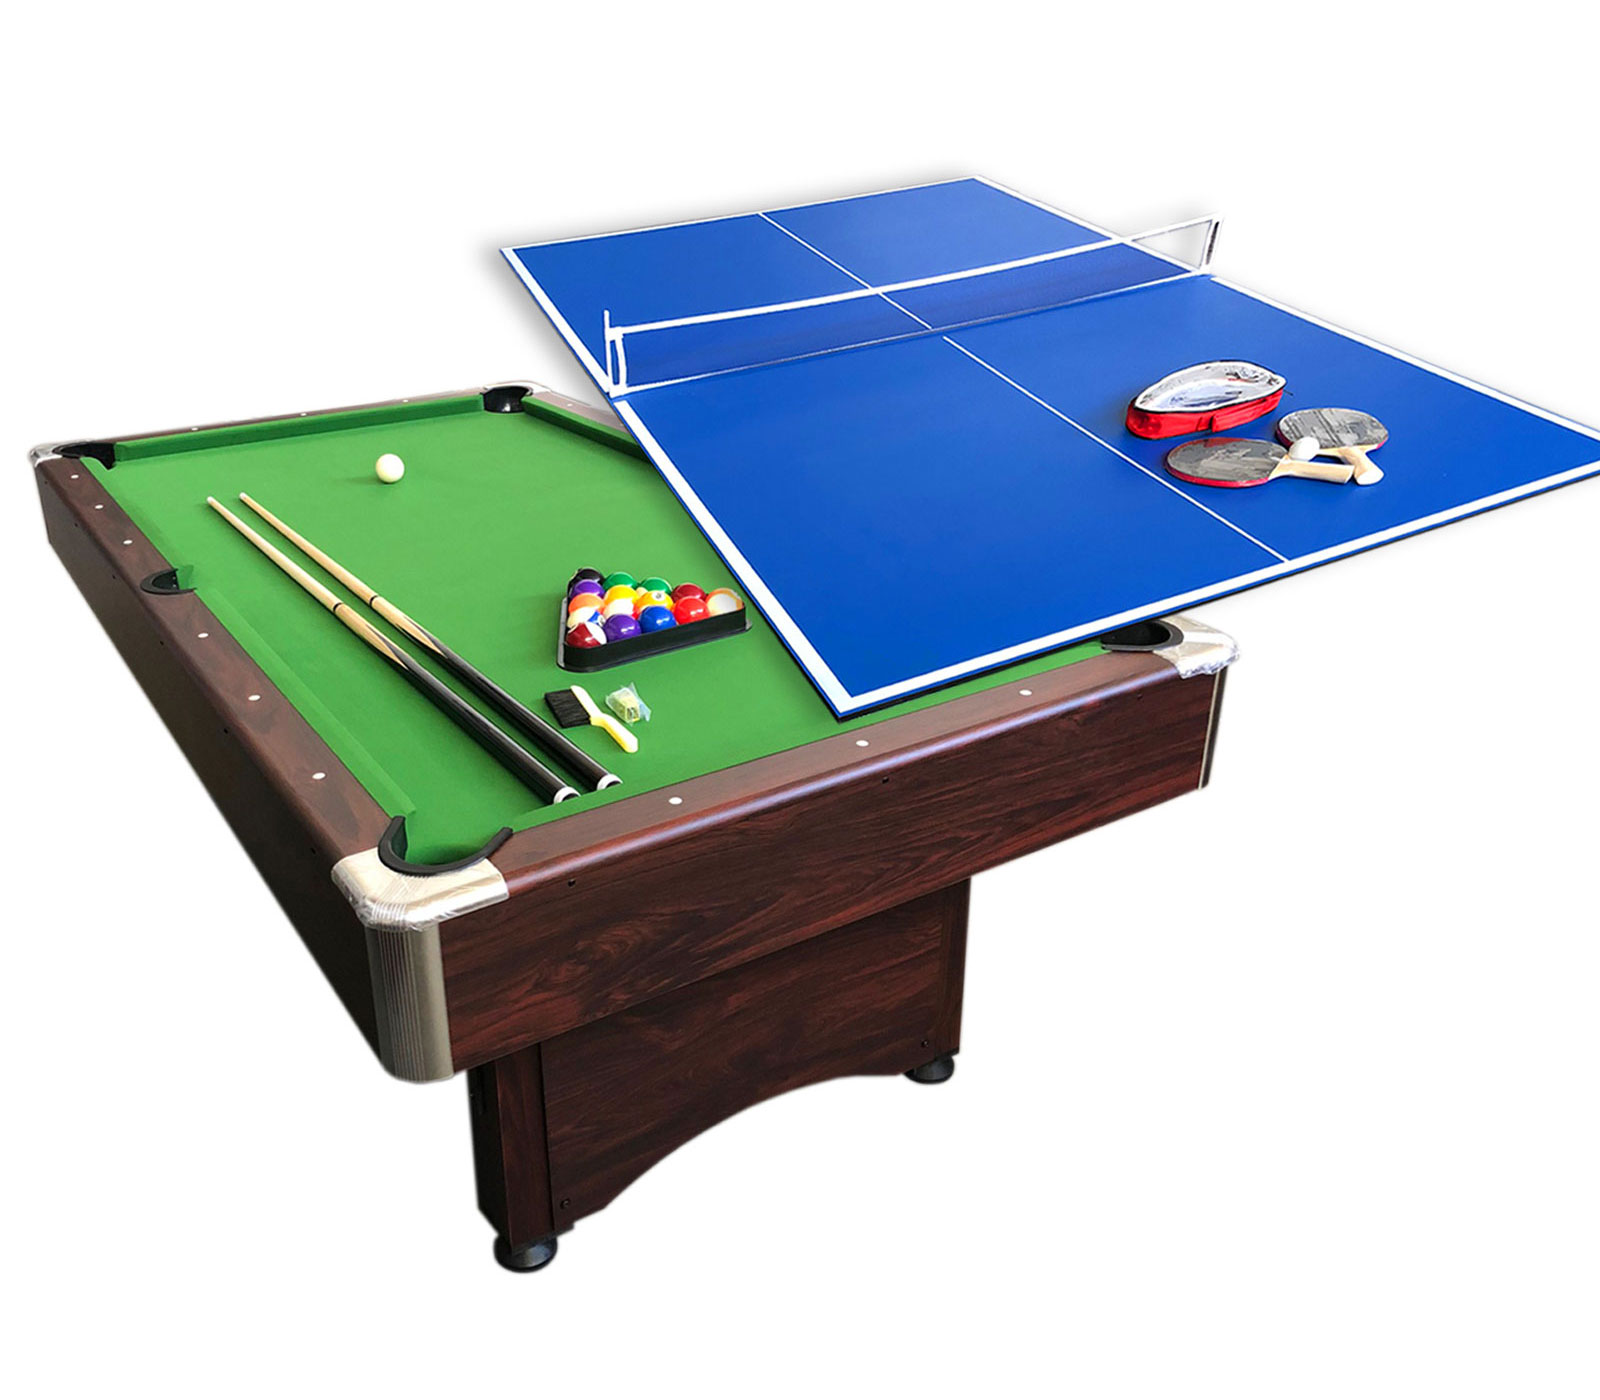 Dettagli Su Tavolo Da Biliardo 7 Ft Con Piano Ping Pong E Accessori Per Carambola Modsirio